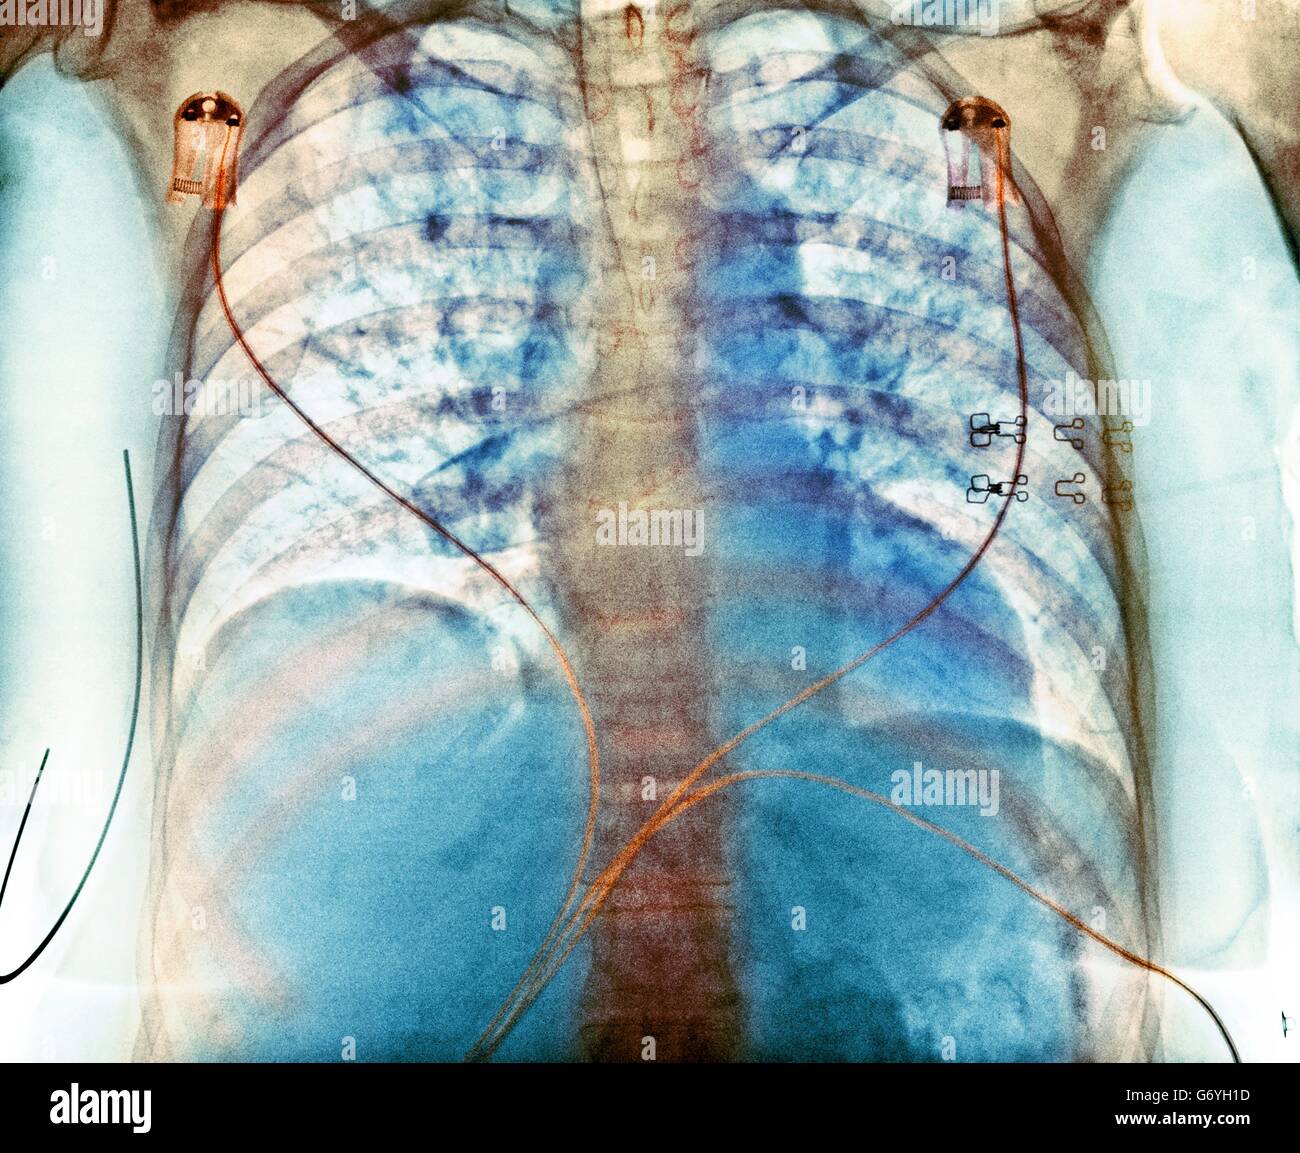 Aspiration. Gefärbte Brust Röntgen zeigt Aspiration (dunkle Bereiche) in der Lunge einer 76 jährige Patientin mit einer umfangreichen Hirnblutung. Aspiration ist die Inhalation von Fremdstoffen, wie z. B. gastrischen Inhalt. Es ist häufig bei Patienten mit Stockfoto